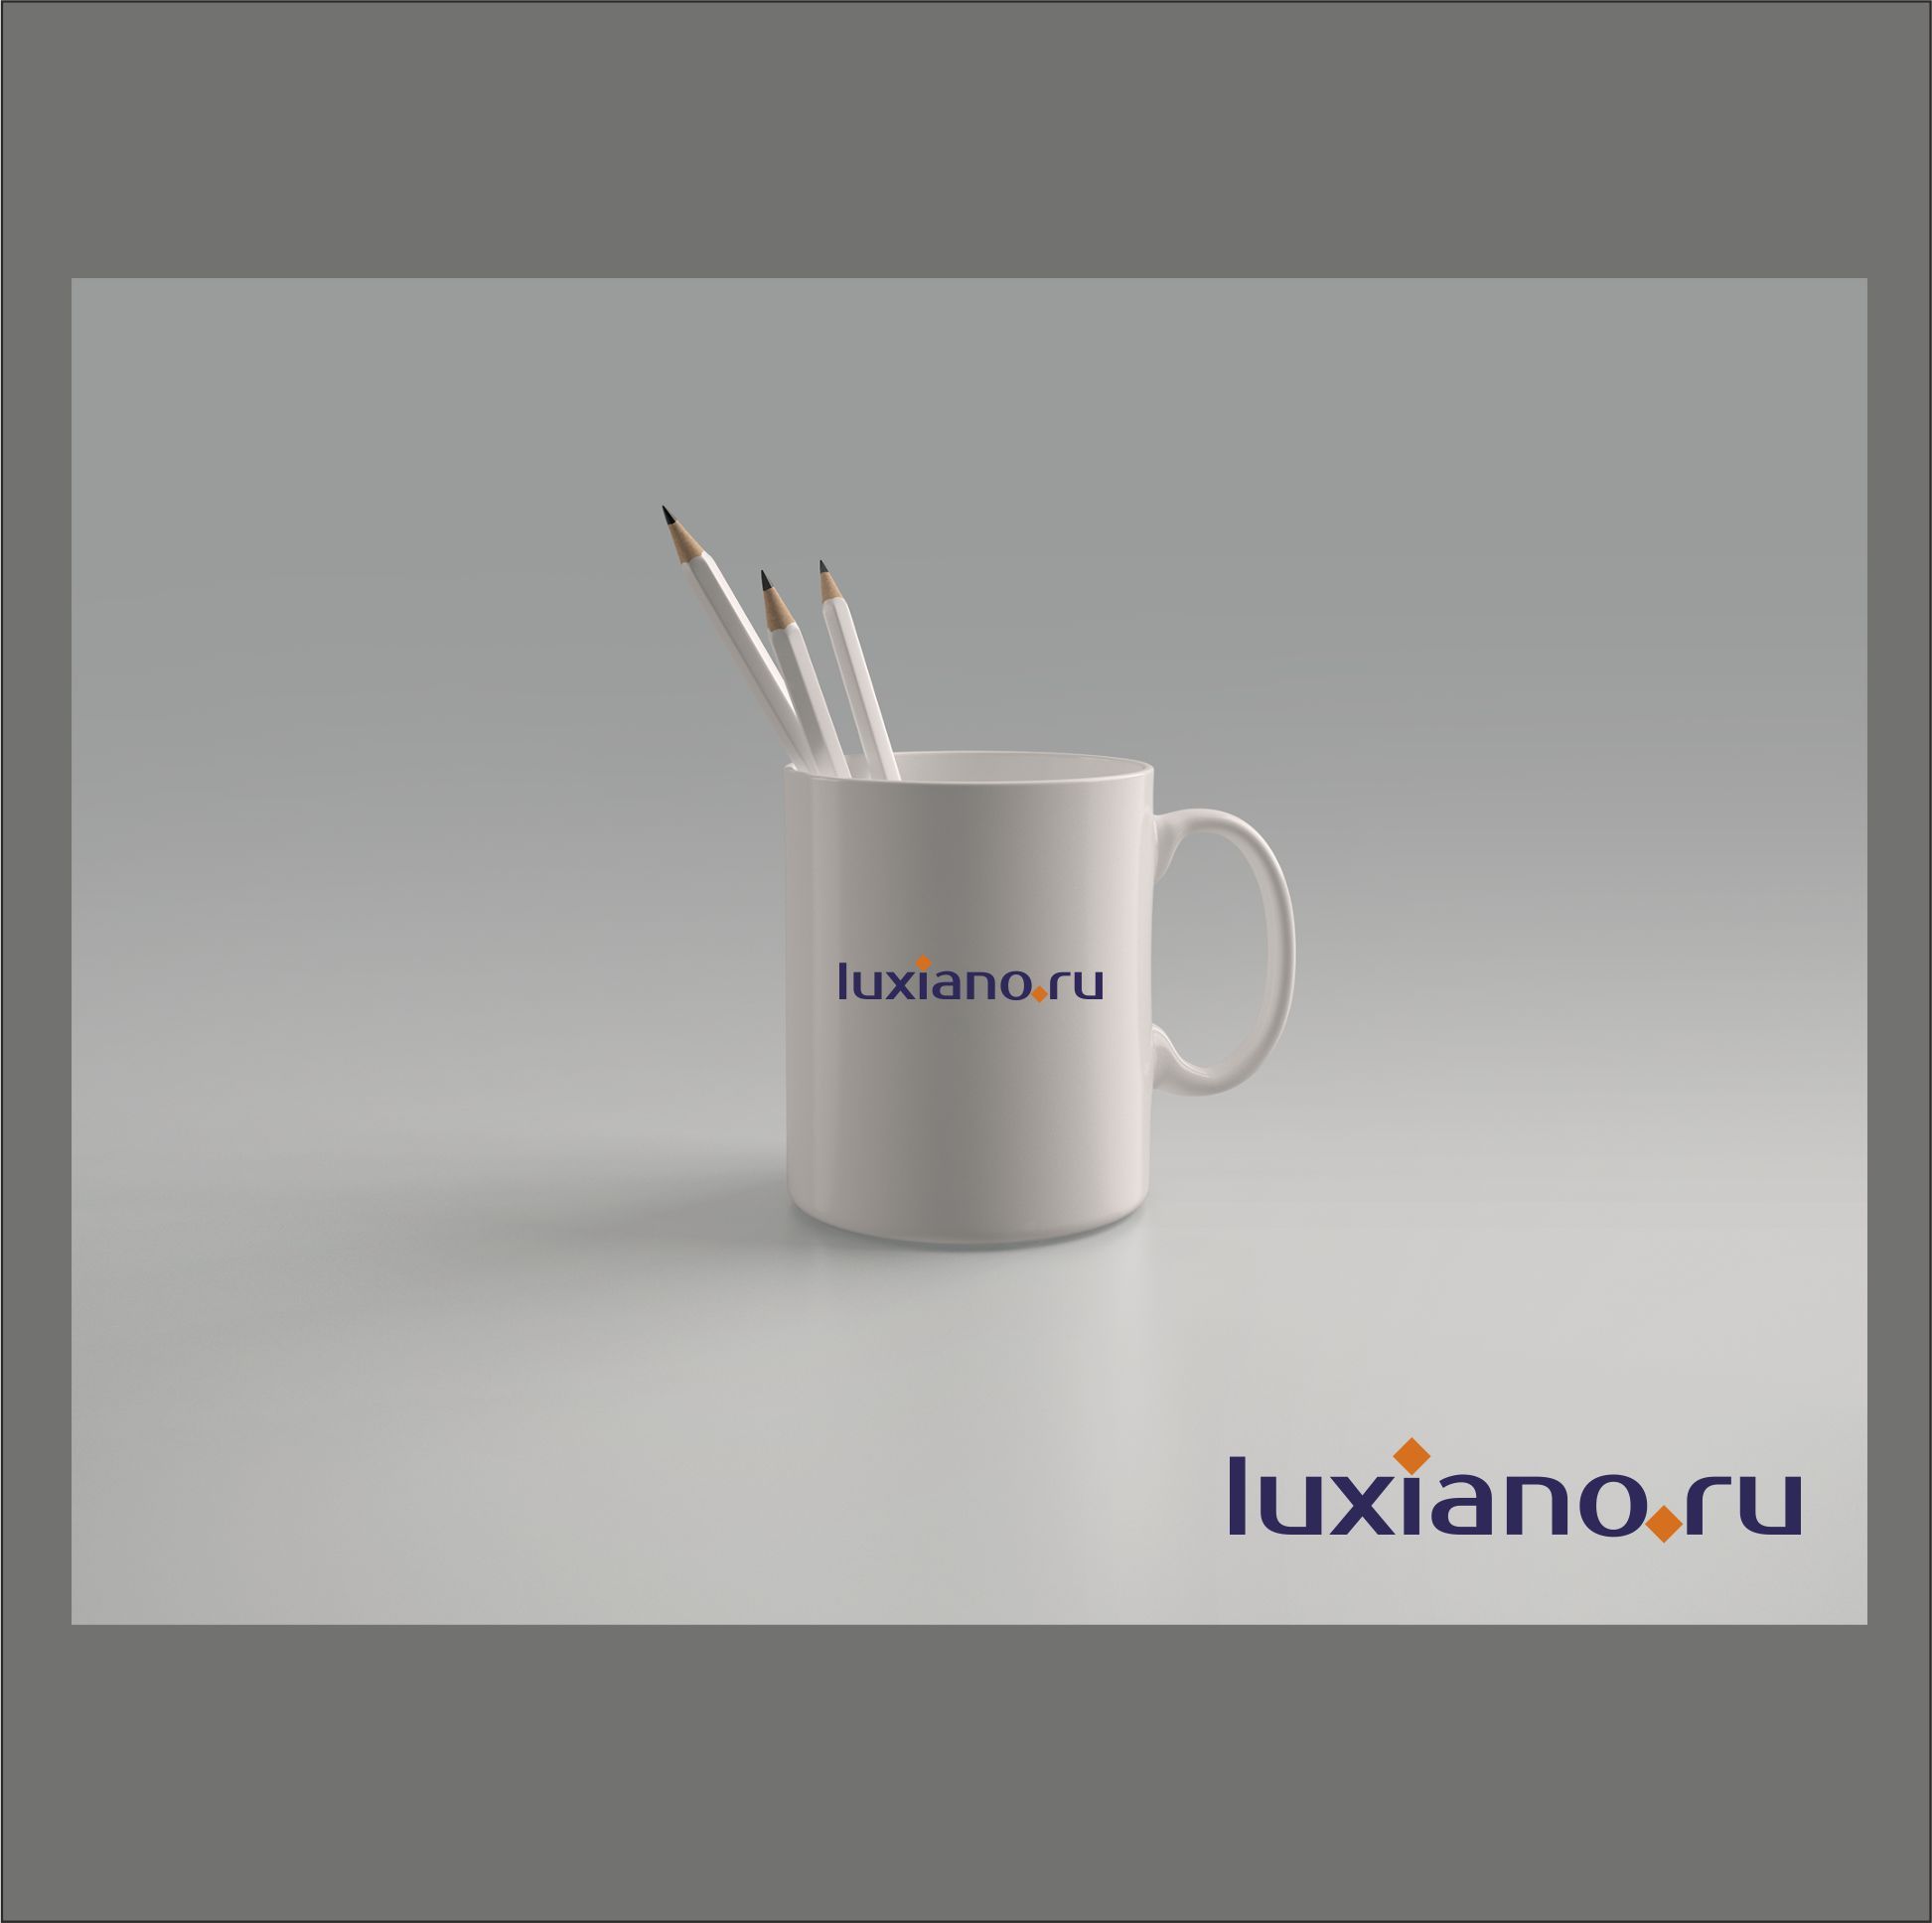 интернет магазин luxiano.ru - дизайнер dbyjuhfl